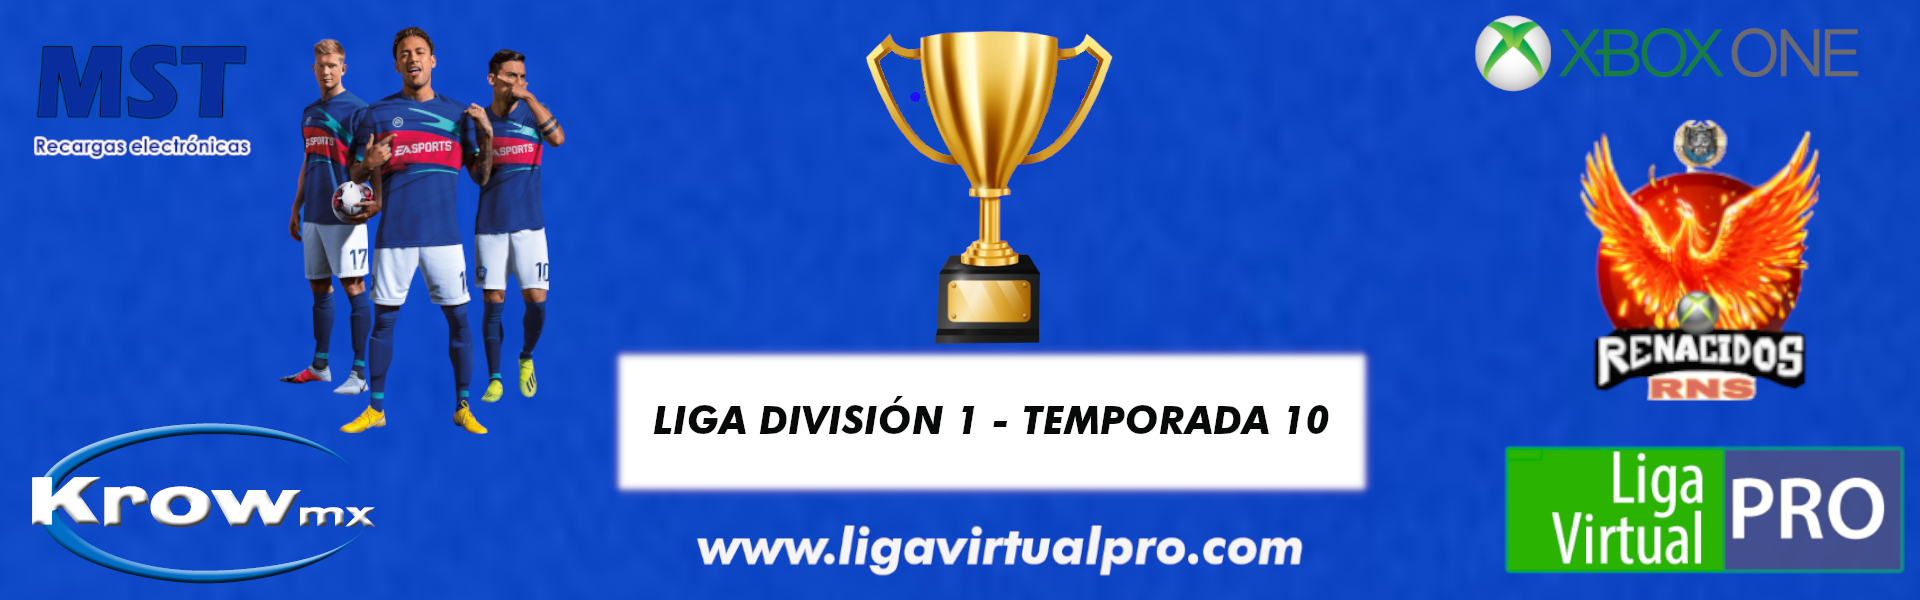 Logo-LIGA DIVISION 1 - TEMPORADA 10